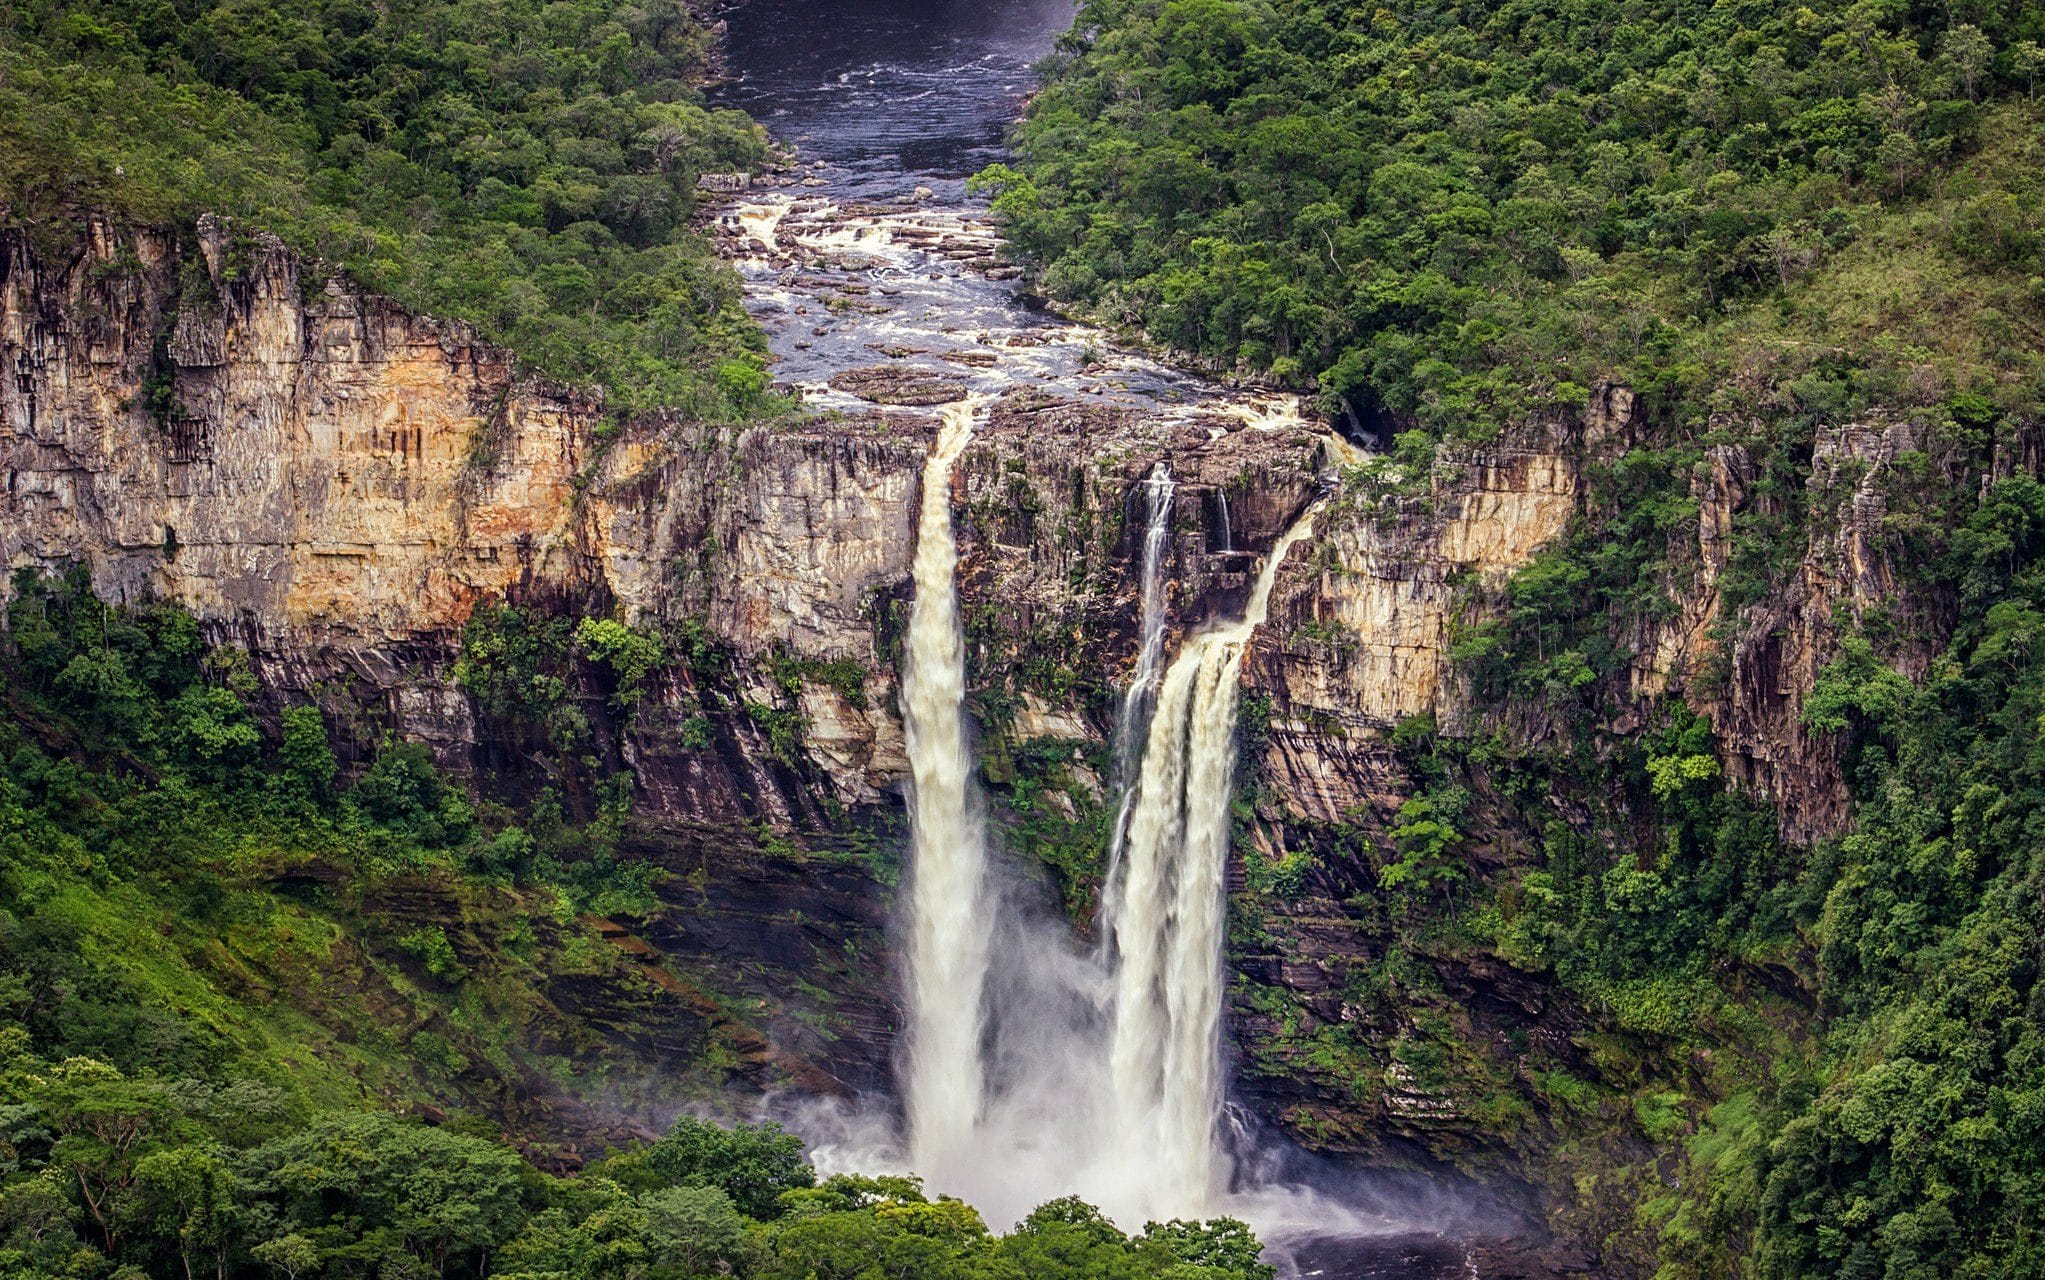 Cachoeira do Salto do Rio Preto vista de cima. Uma enorme cachoeira. Ao fundo, uma zona verde.